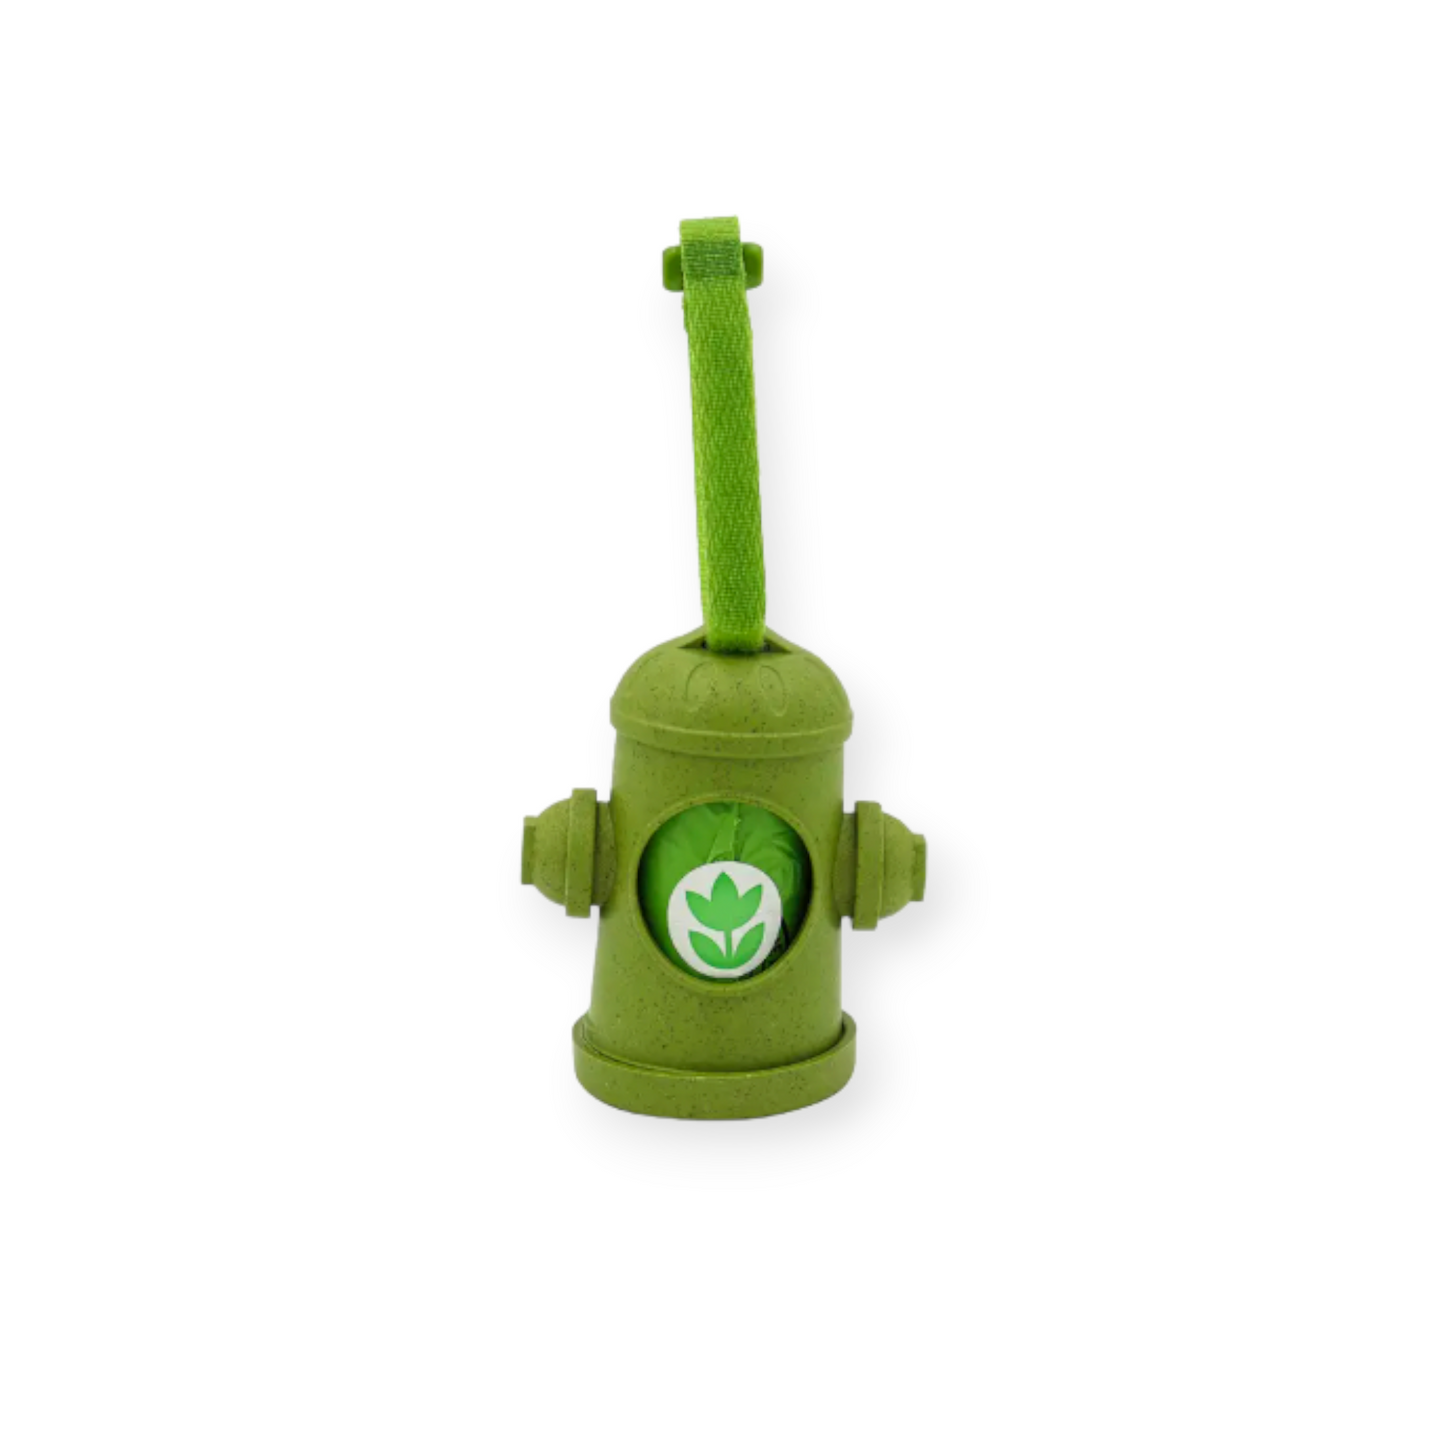 Dispensador de bolsas para excrementos de mascotas | El hidrante original Poop Bags®